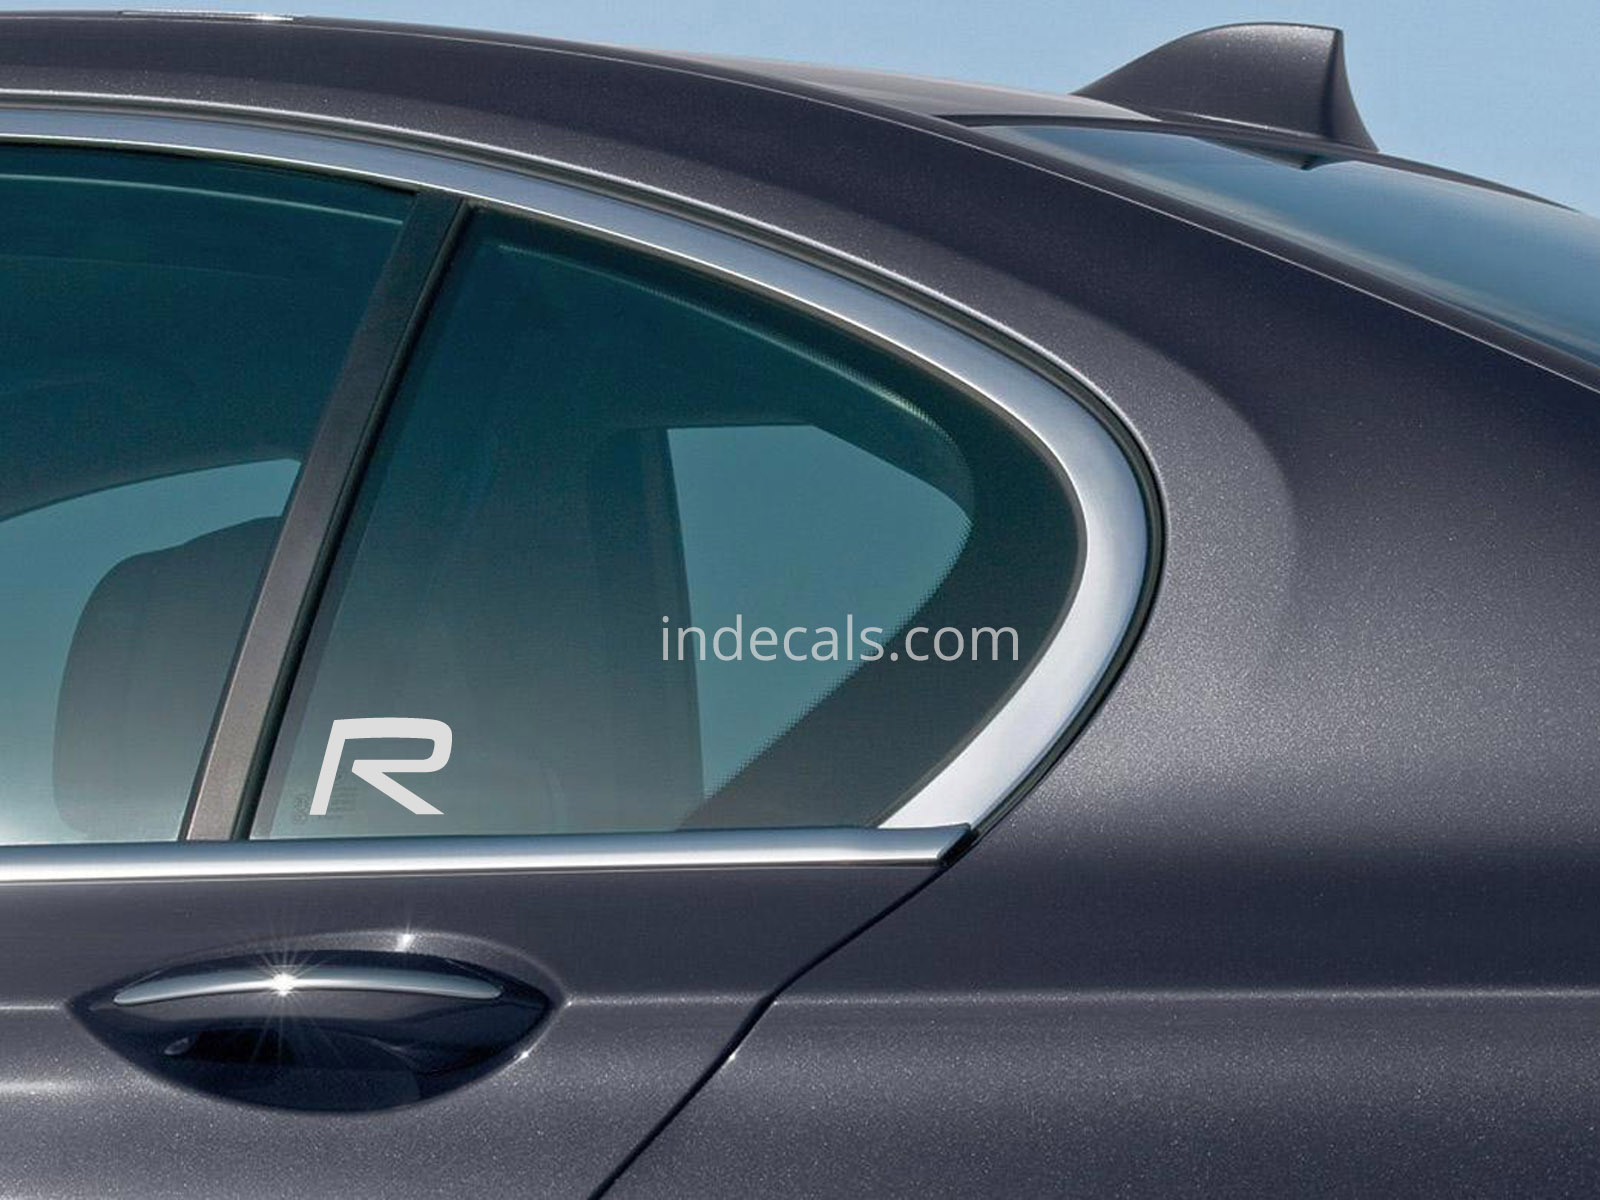 2 x Volvo R-Design stickers for Rear Window Silver